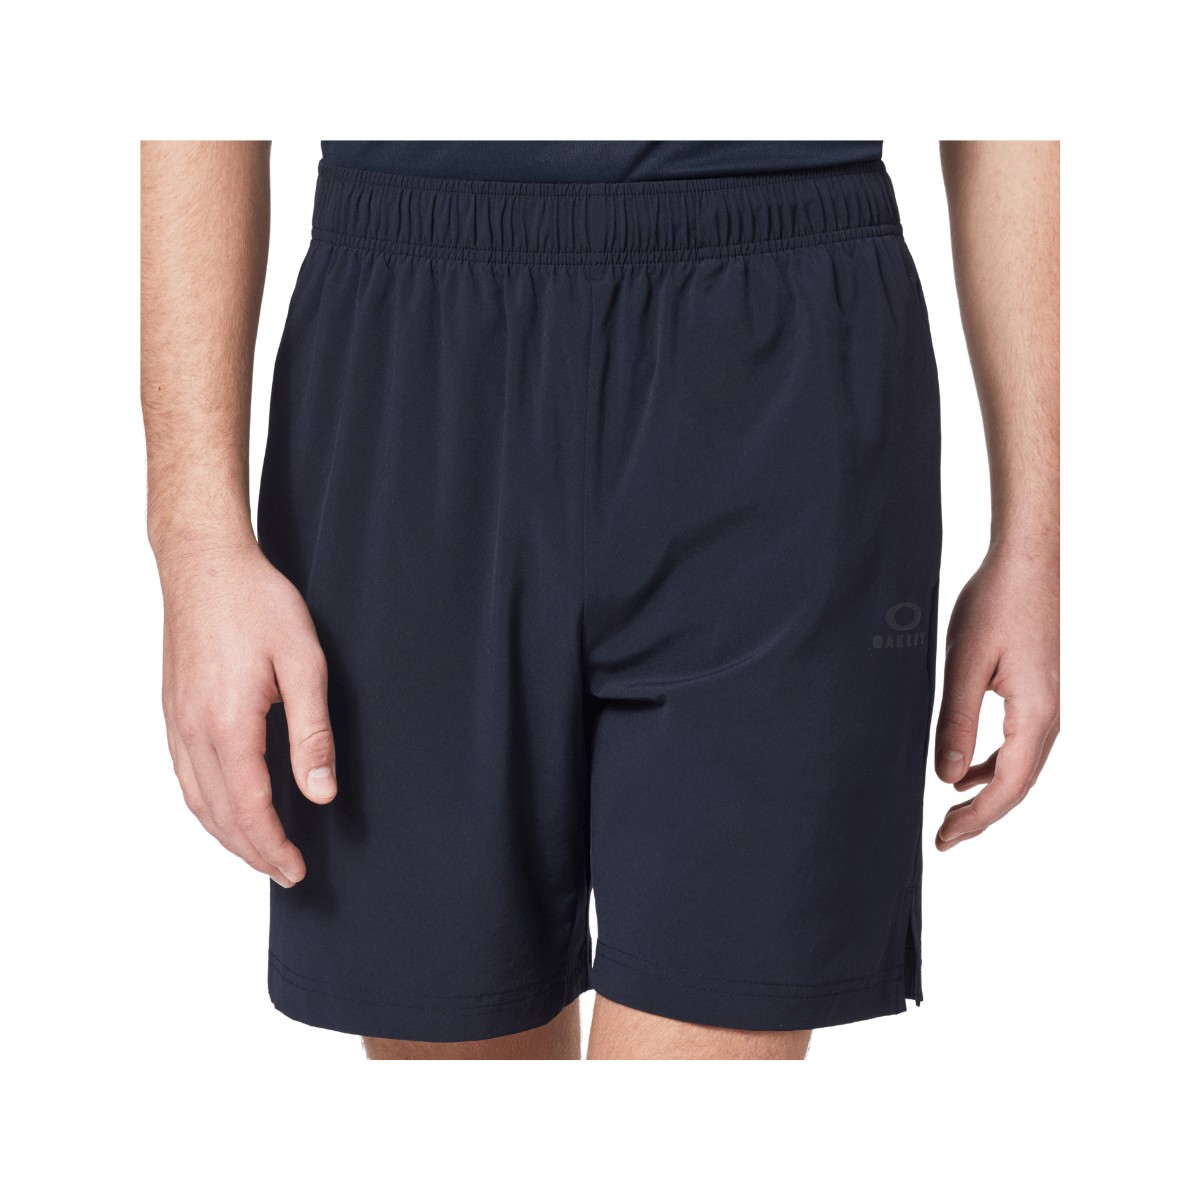 Oakley Foundational Training 7 Shorts Black, Size S